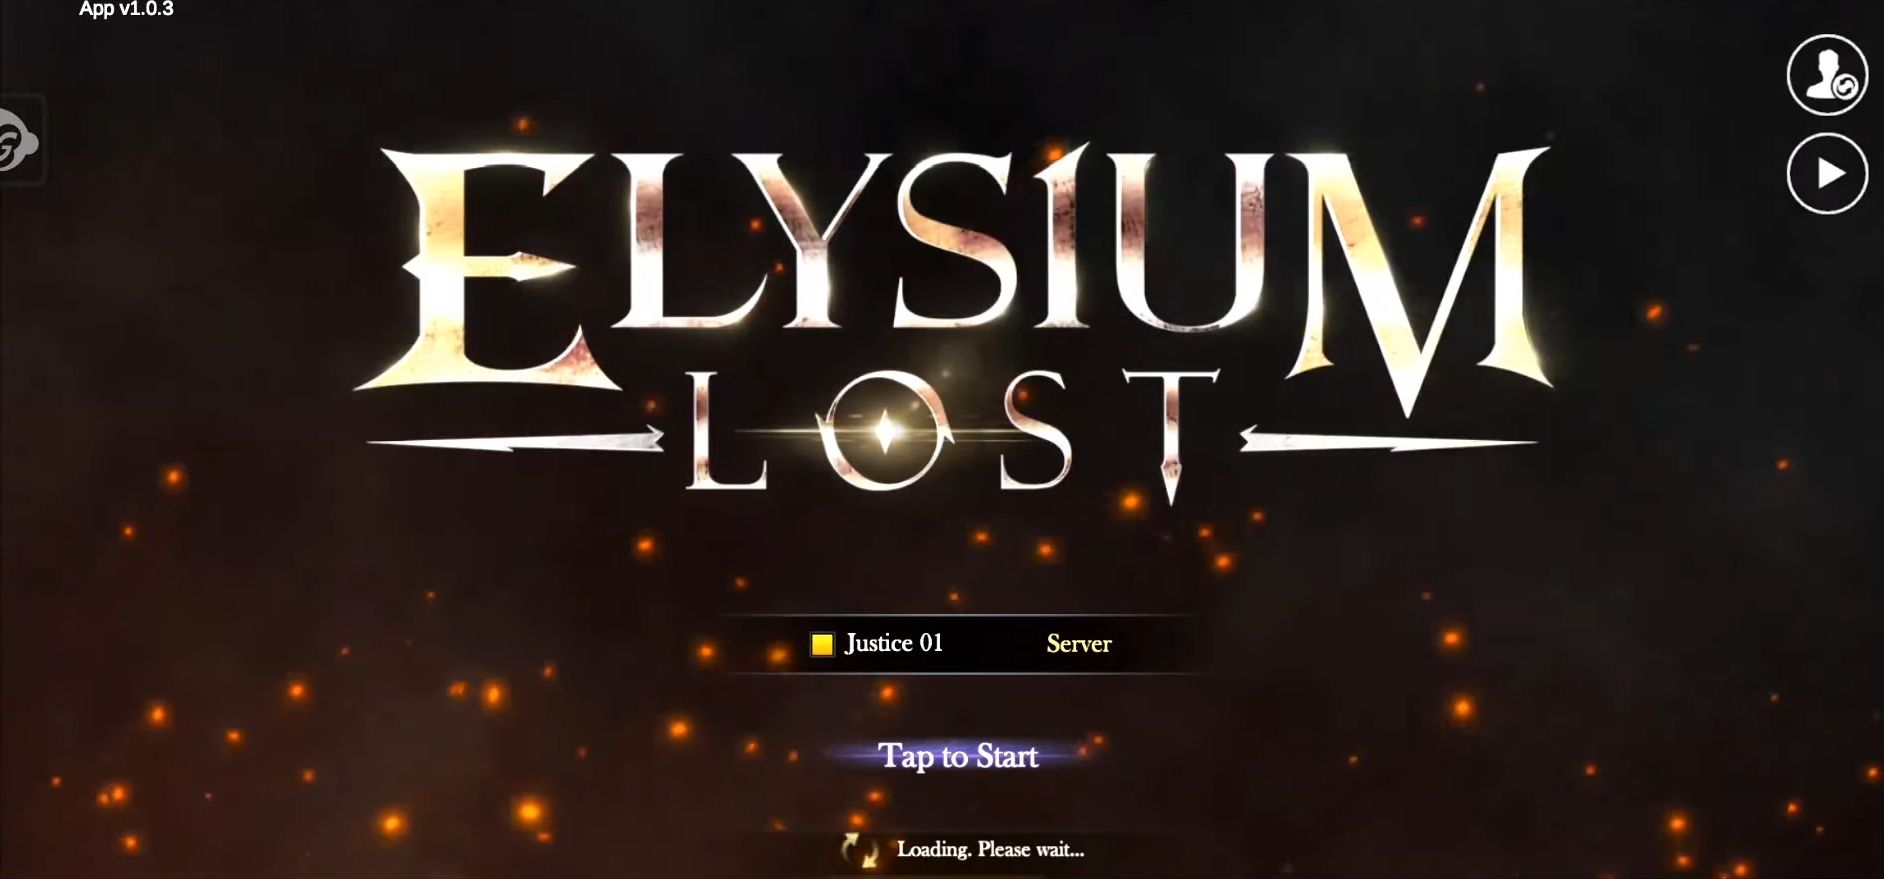 Télécharger Elysium Lost pour Android gratuit.